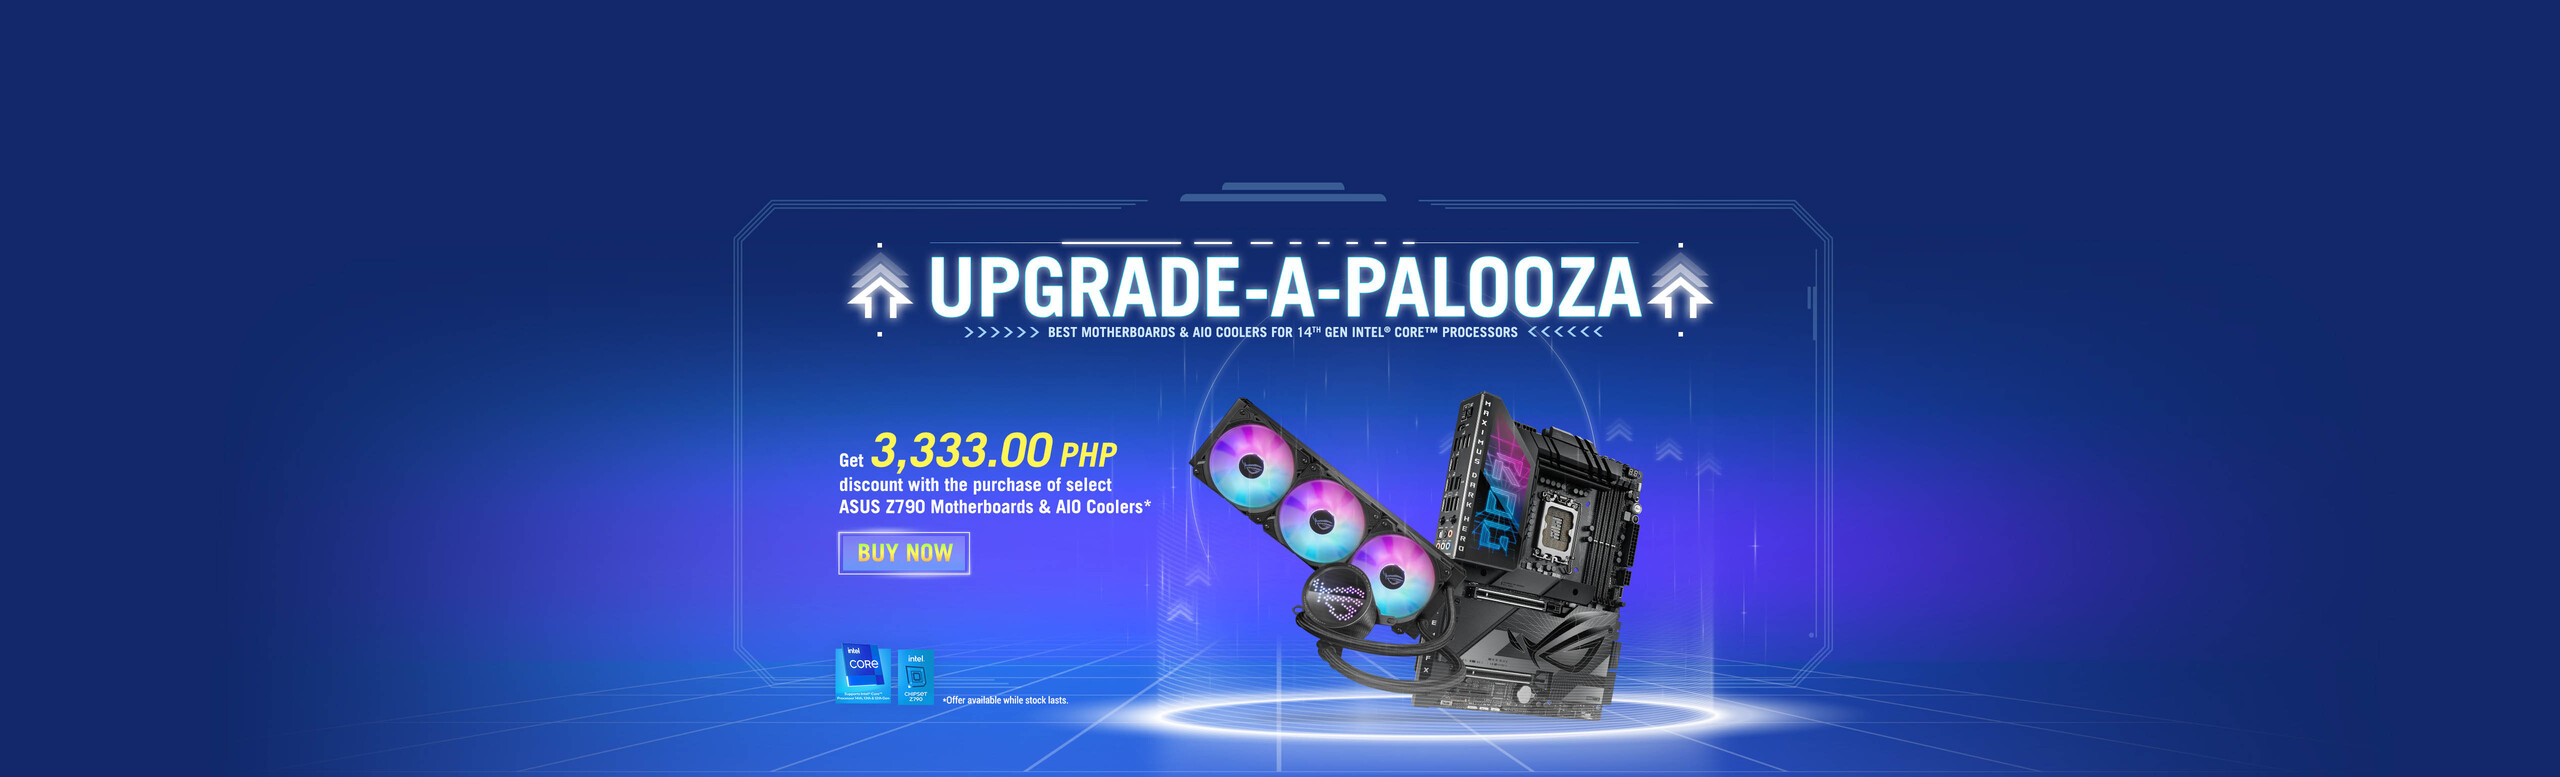 Upgrade-A-Palooza